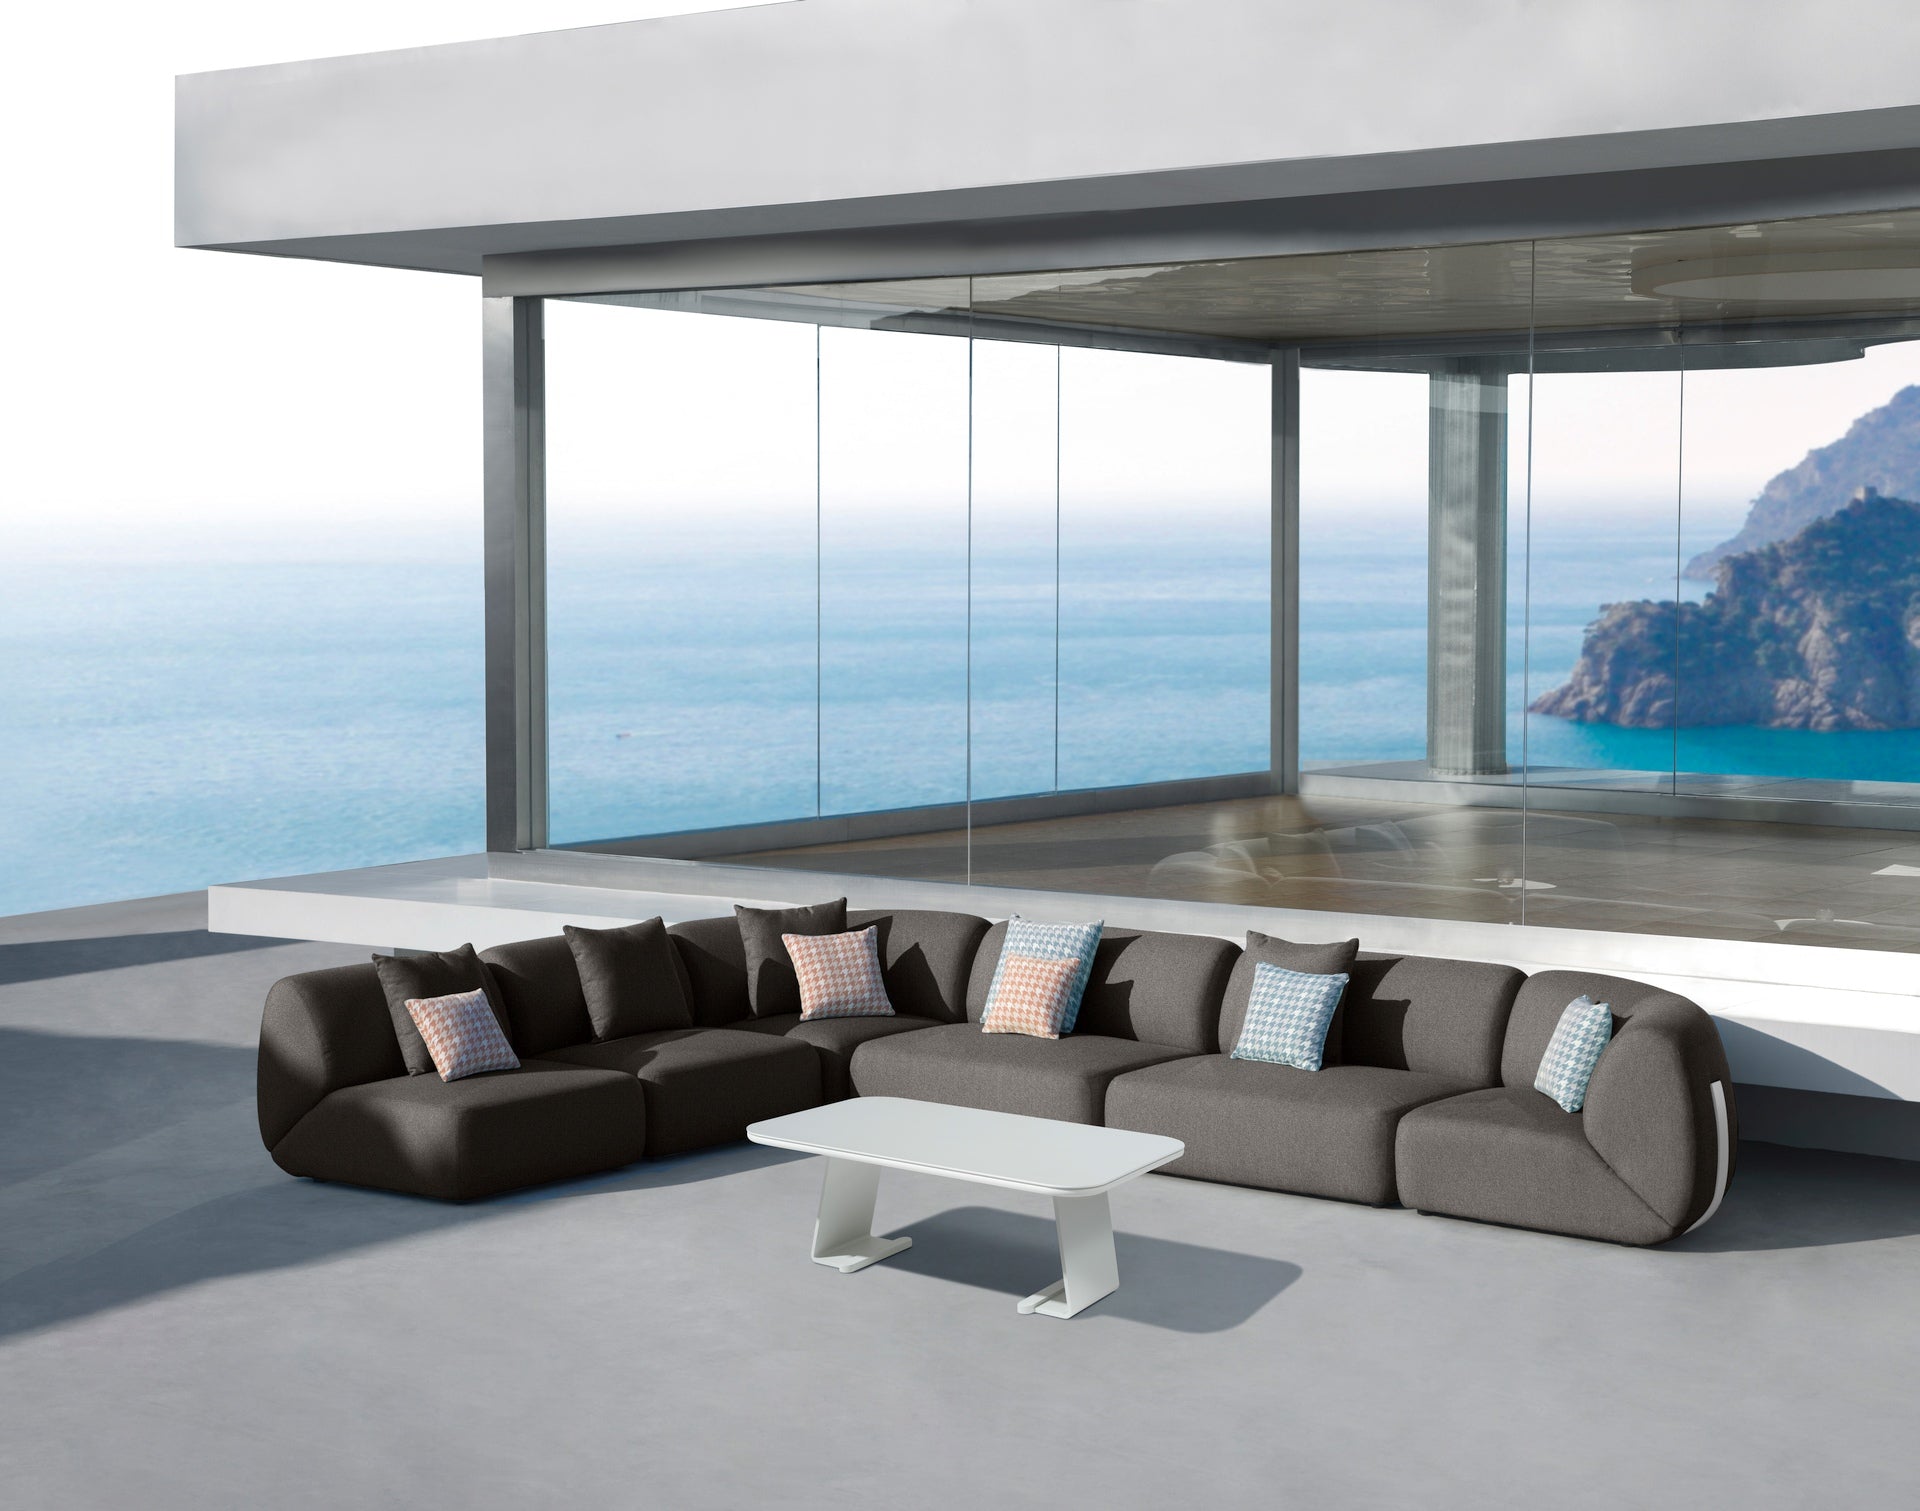 Modulare Monique Loungeelemente im Außenbereich mit weißem Aluminiumgestell und robustem Axroma-Stoff, arrangiert auf einer modernen Terrasse mit atemberaubender Meereskulisse.